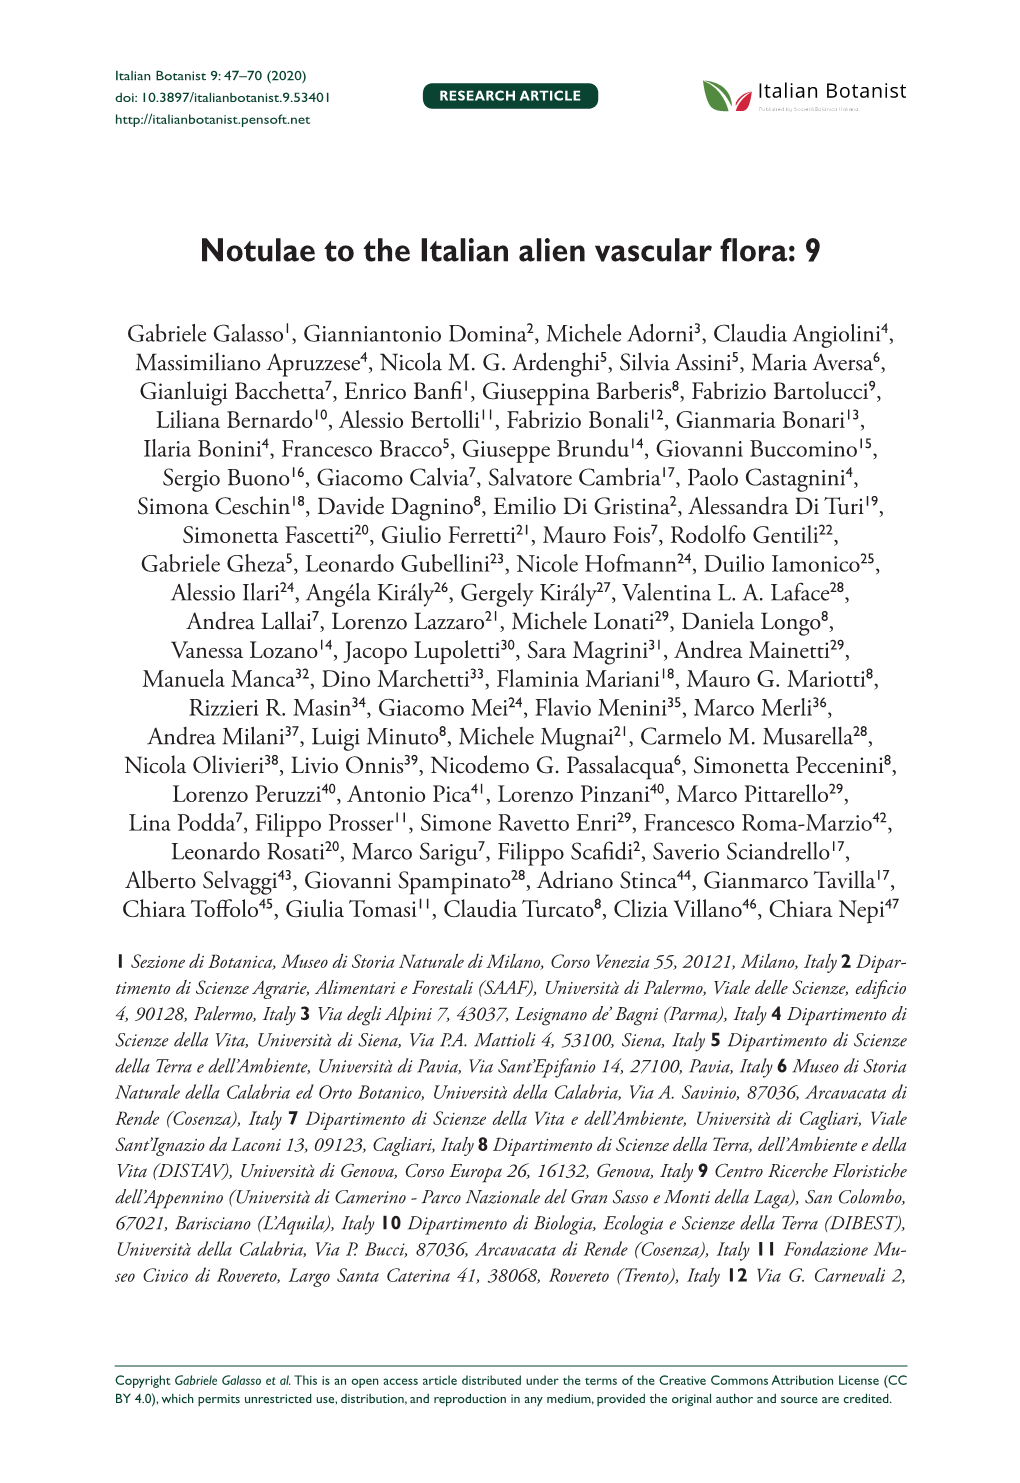 Notulae to the Italian Alien Vascular Flora: 9